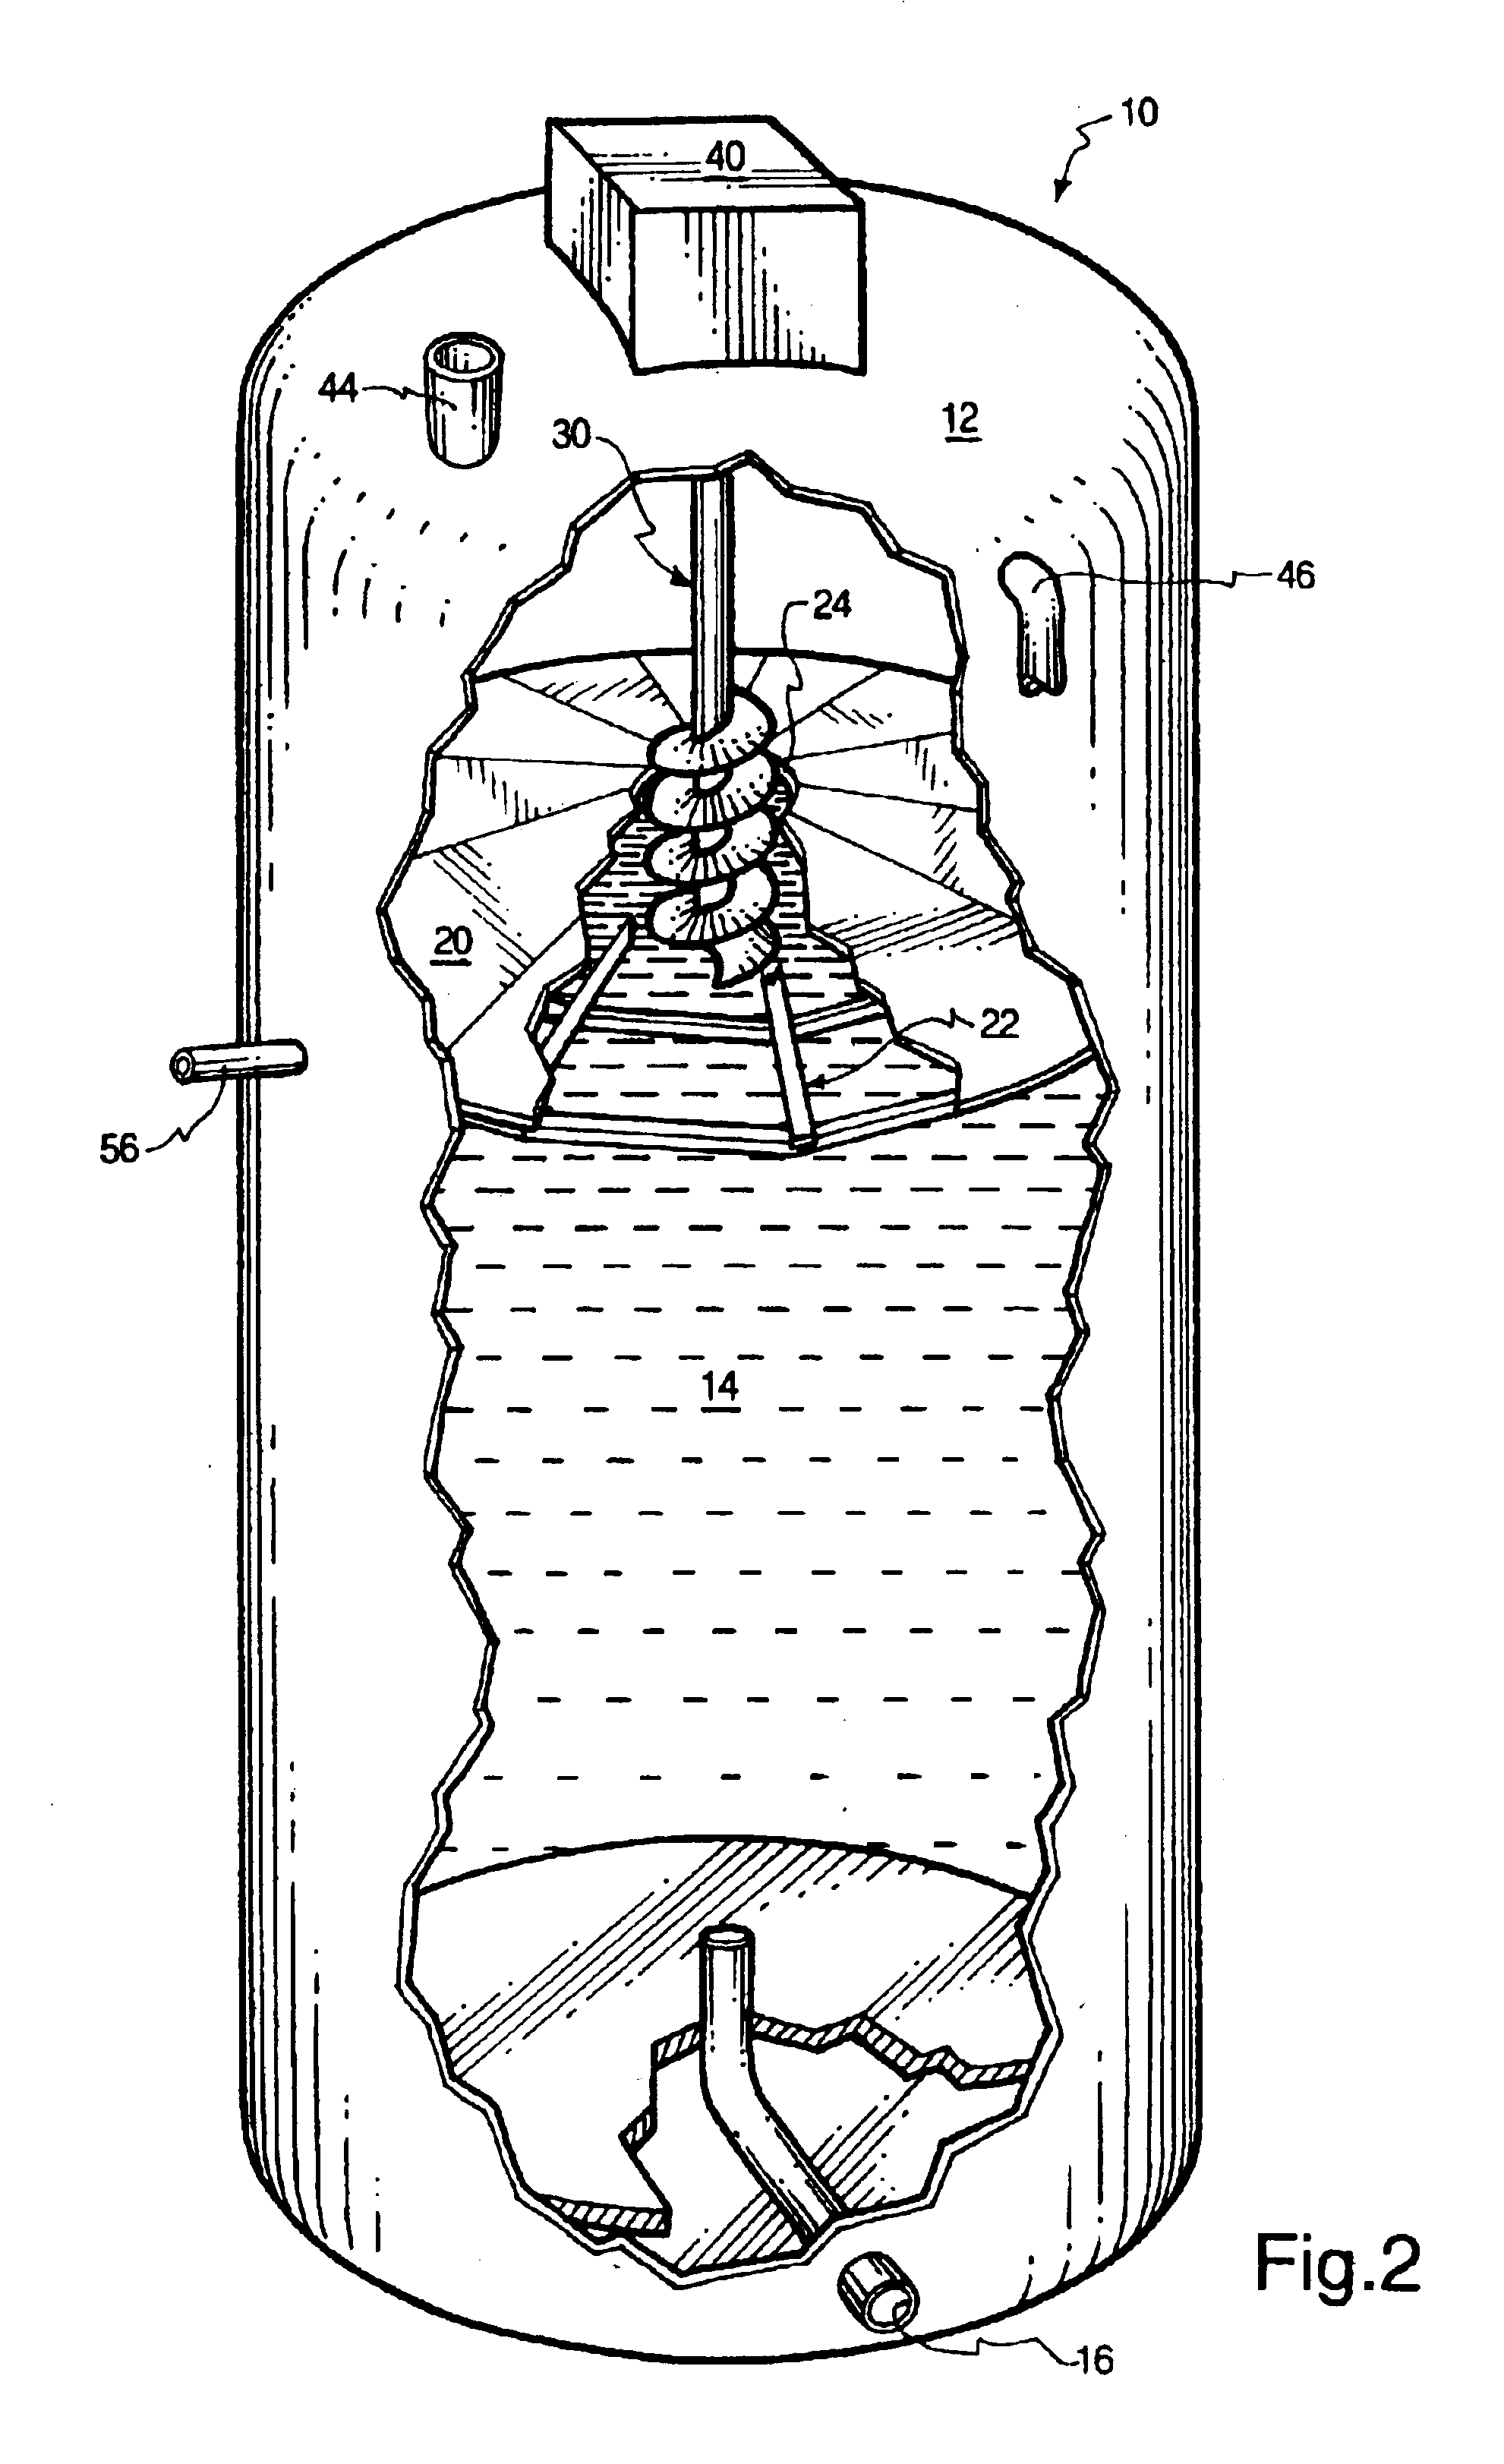 Induced sludge bed anaerobic reactor